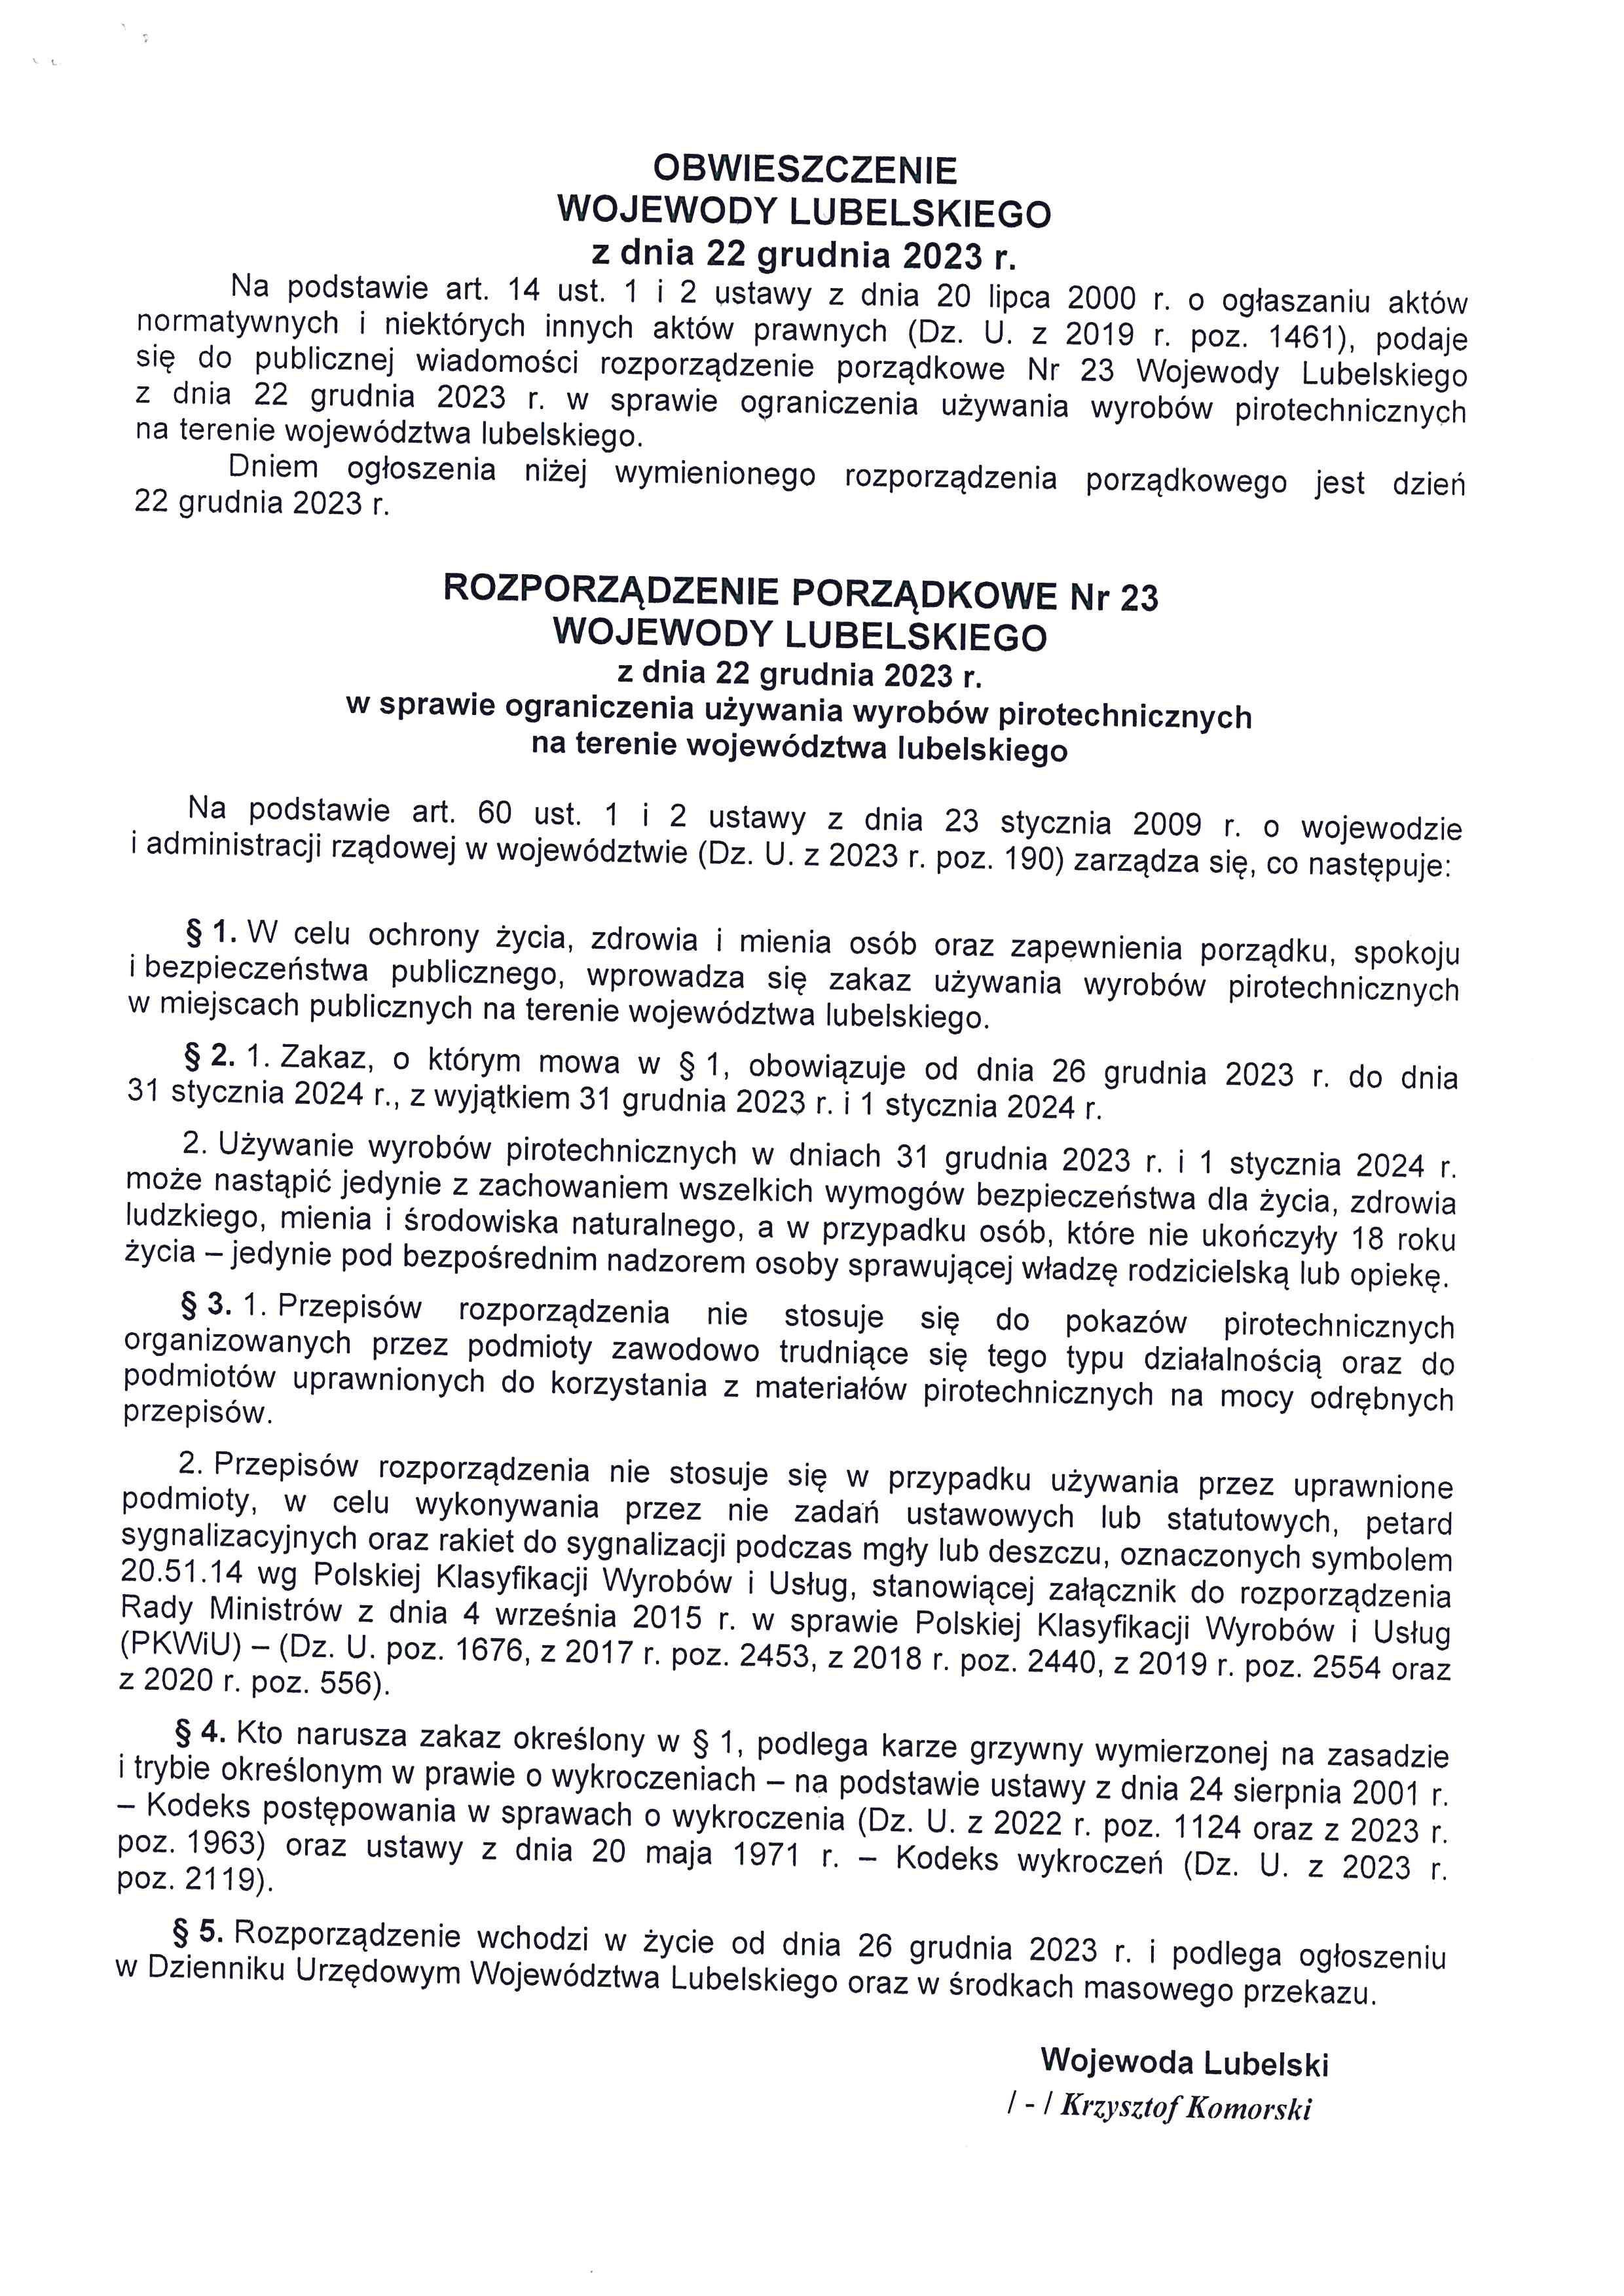 Rozporządzenie porządkowe Nr 23 Wojewody Lubelskiego Nr 23 z 22.12.2023 r.